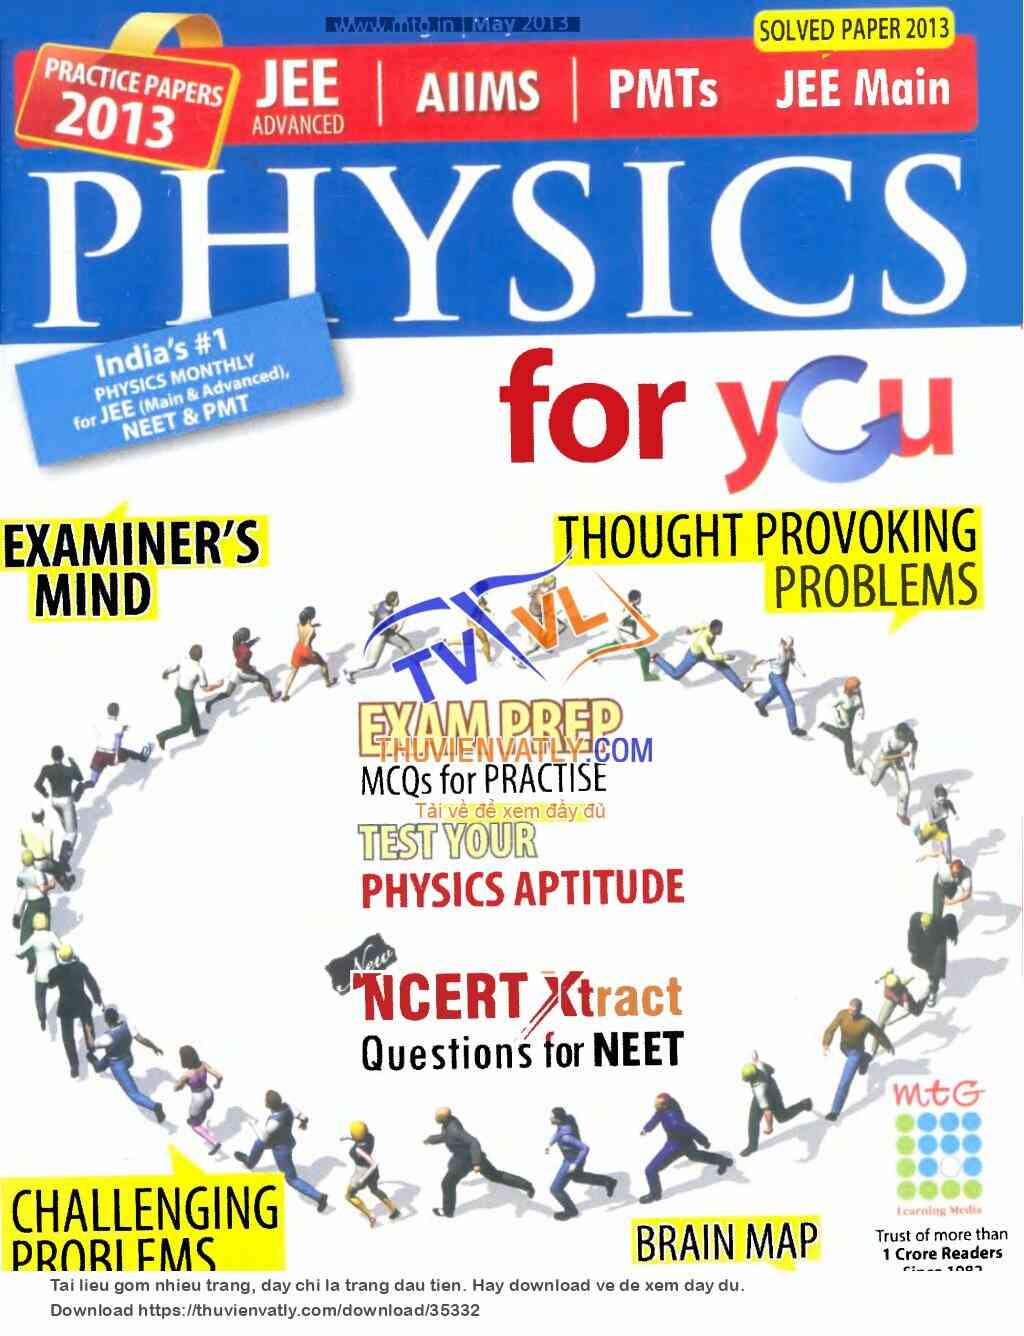 Tạp chí Physics For You, số tháng 6/2013